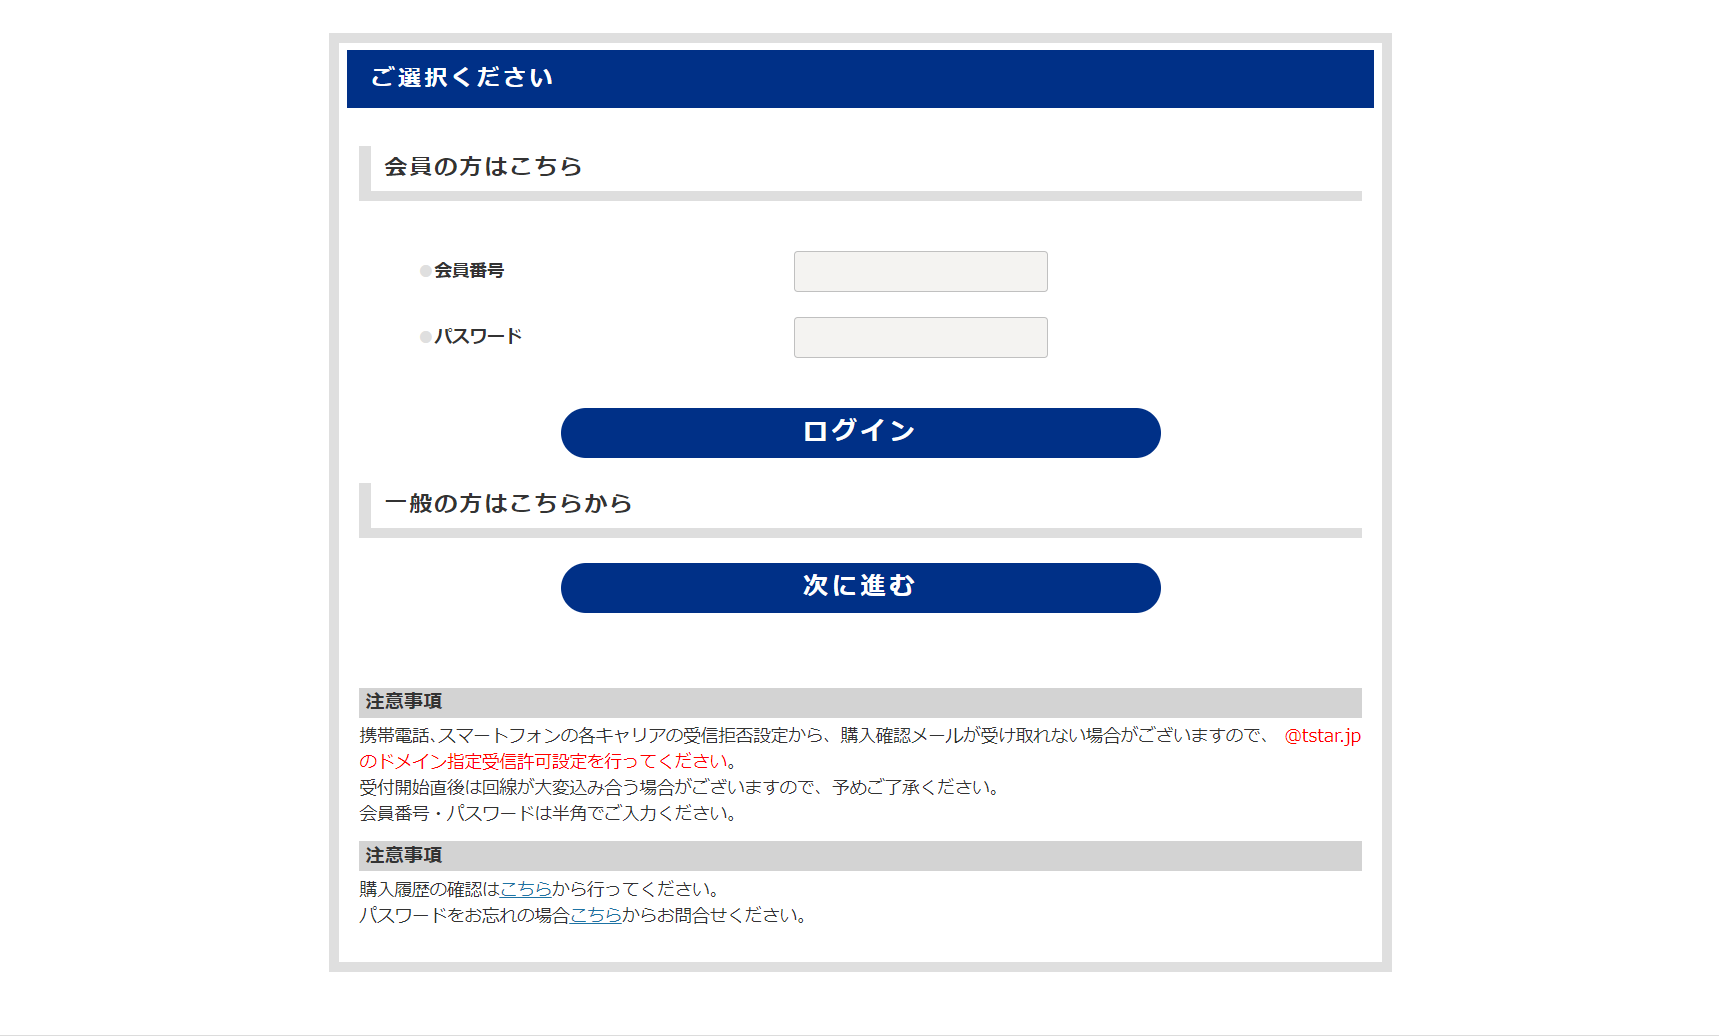 マイシート購入ガイド 横浜fcオフィシャルウェブサイト